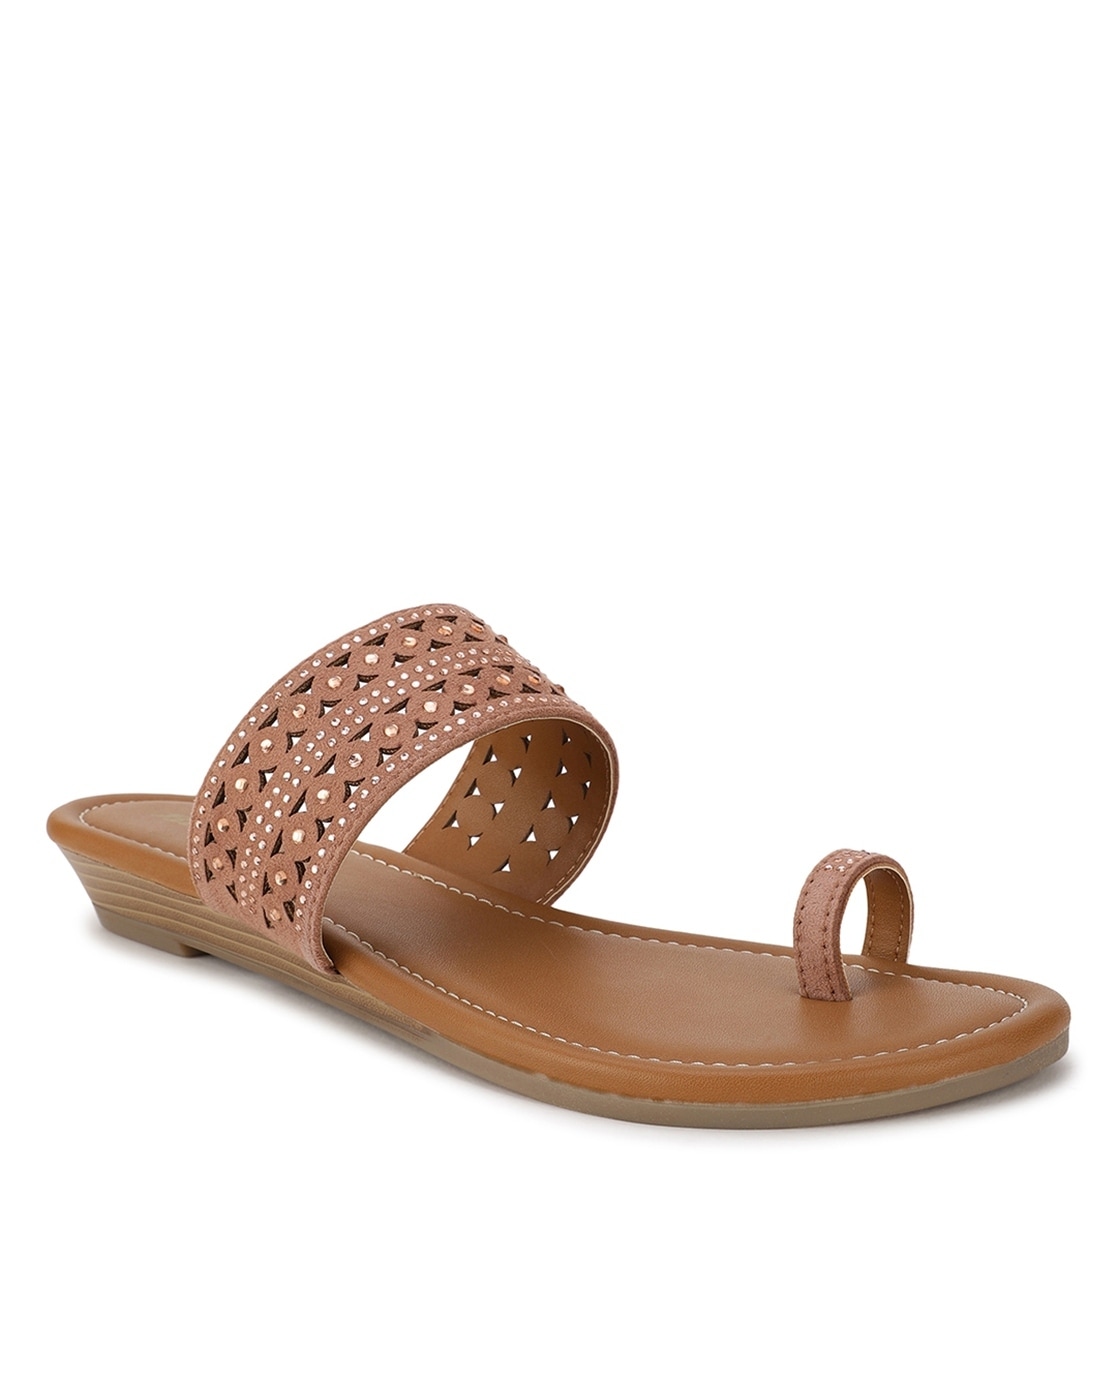 Senorita Comfort (Tan) Thong Sandals For Ladies FTL-05 By Liberty